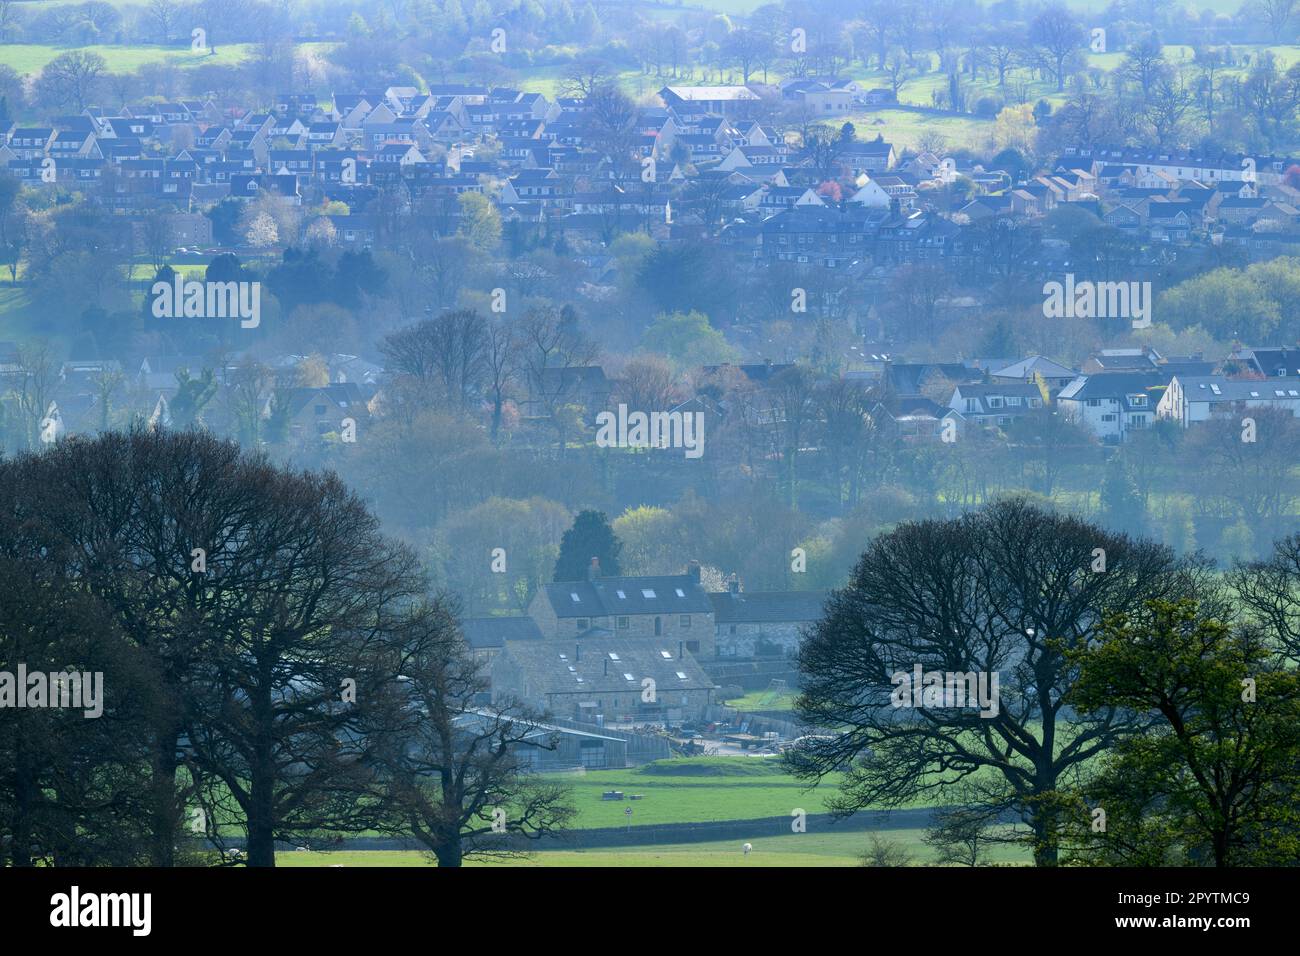 Villaggio di Addingham vista elevata (insediamento in espansione in valle confinante con i campi, luogo panoramico in cui vivere) - Wharfedale, West Yorkshire, Inghilterra, Regno Unito. Foto Stock